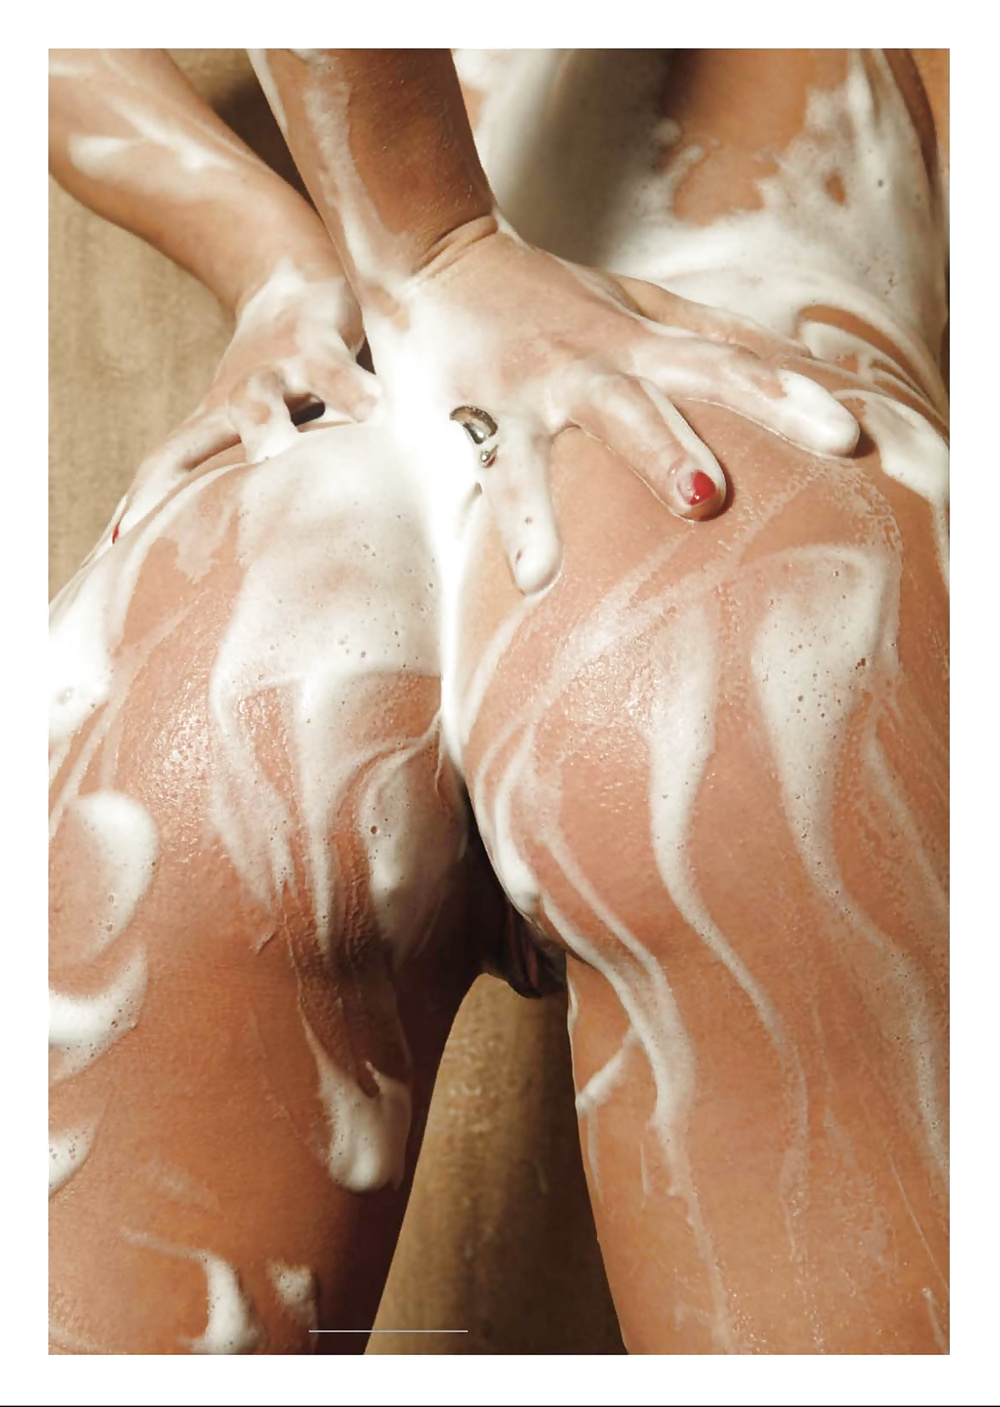 La miley cyrus argenta desnuda - argentina cyrus nuda
 #39662755